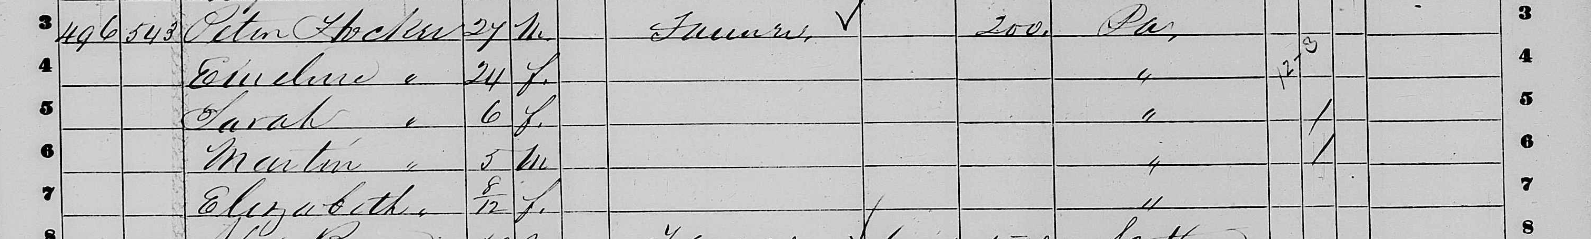 1860 Peter Hocker census record